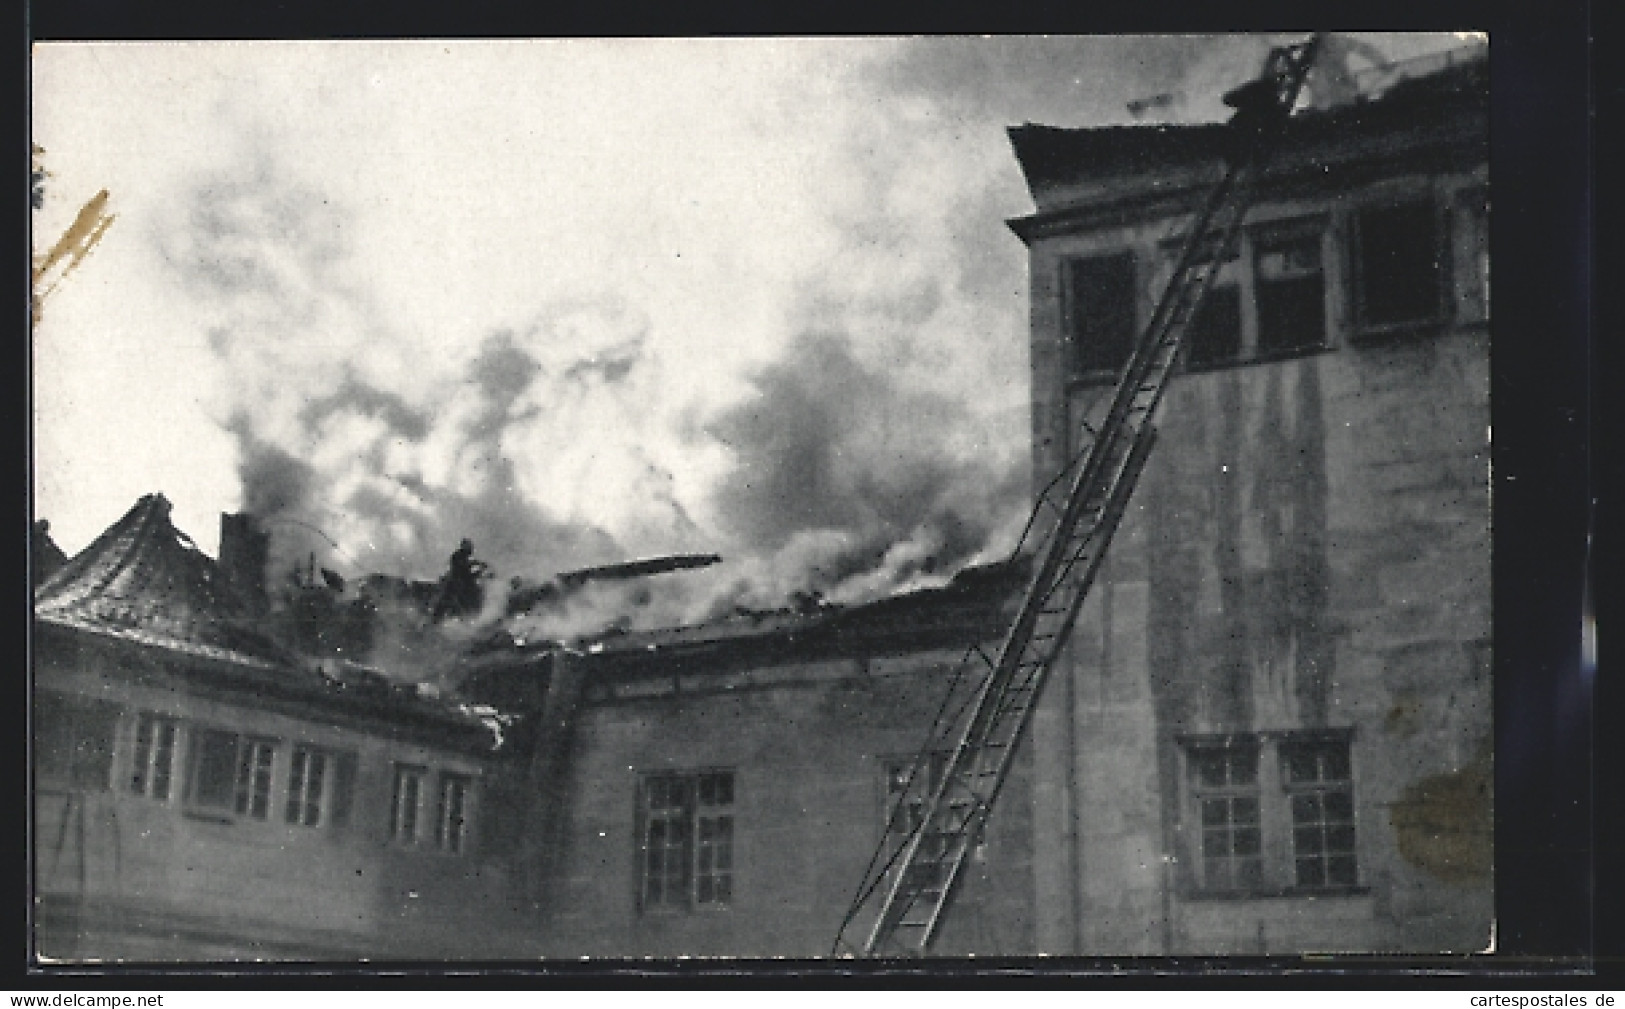 AK Stuttgart, Brand Des Alten Schlosses 21.-22.12.1931, Brennender Dachstuhl  - Disasters